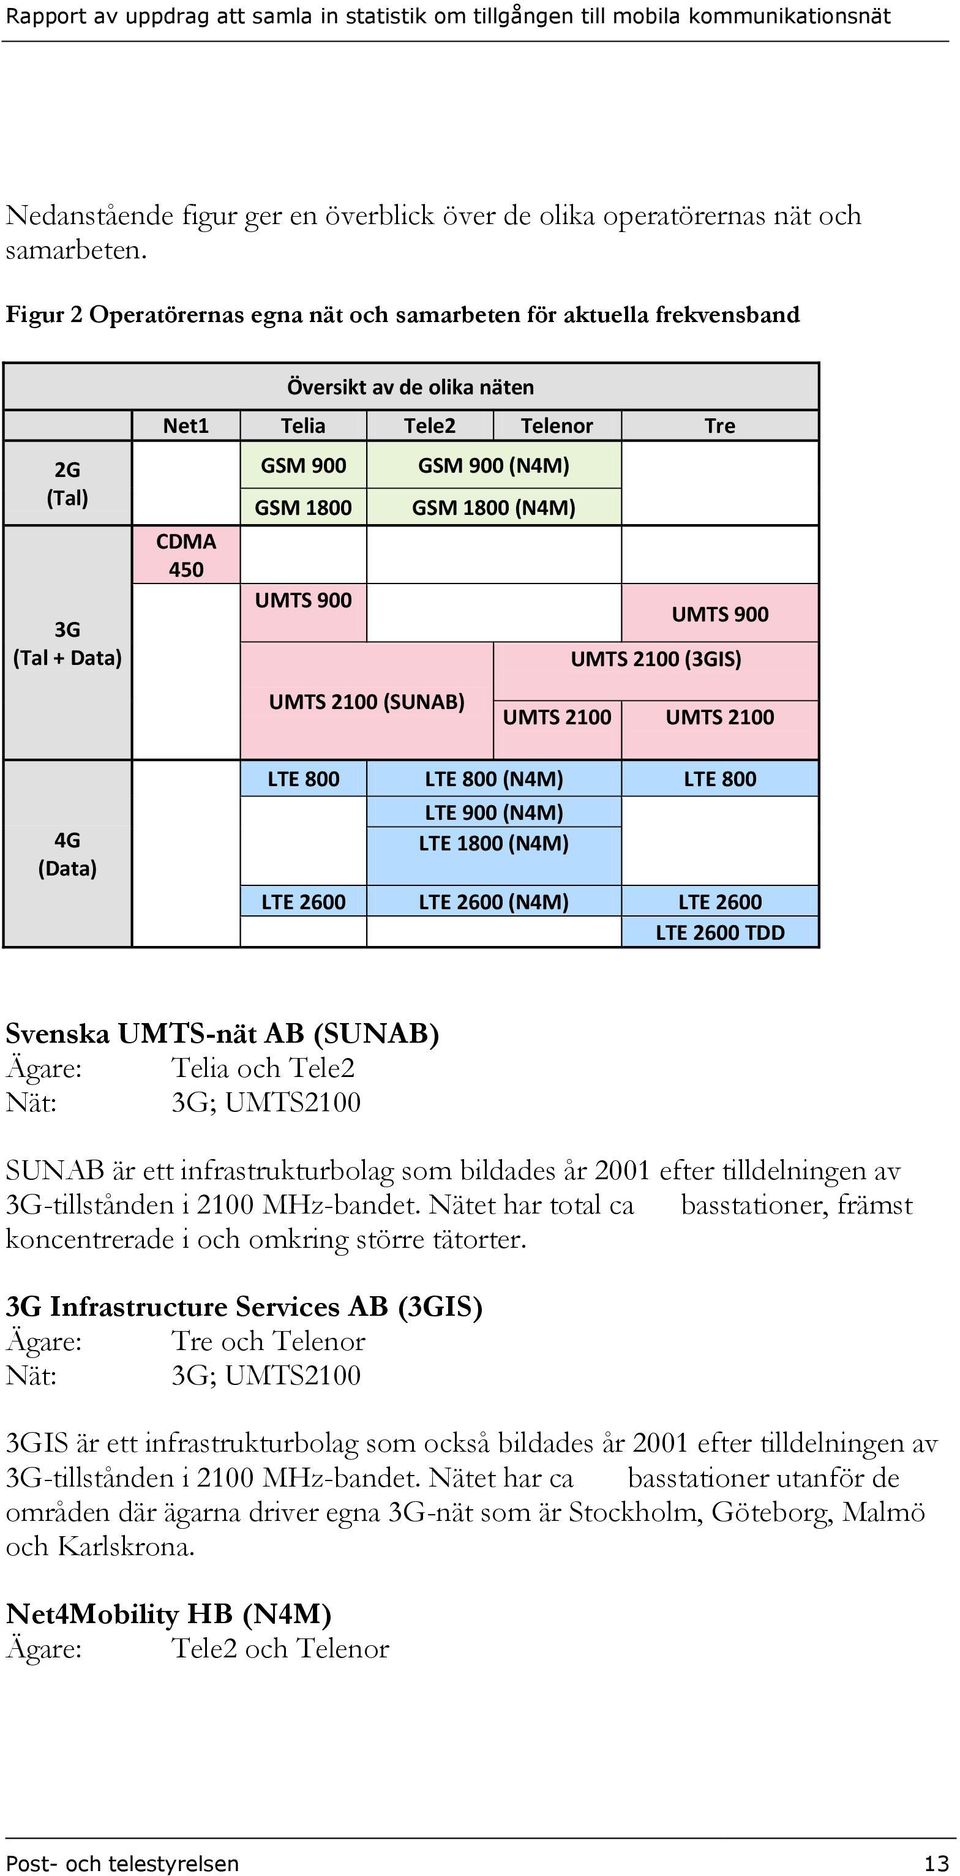 UMTS 2100 (SUNAB) GSM 900 (N4M) GSM 1800 (N4M) UMTS 900 UMTS 2100 (3GIS) UMTS 2100 UMTS 2100 LTE 800 LTE 800 (N4M) LTE 800 LTE 900 (N4M) LTE 1800 (N4M) LTE 2600 LTE 2600 (N4M) LTE 2600 LTE 2600 TDD